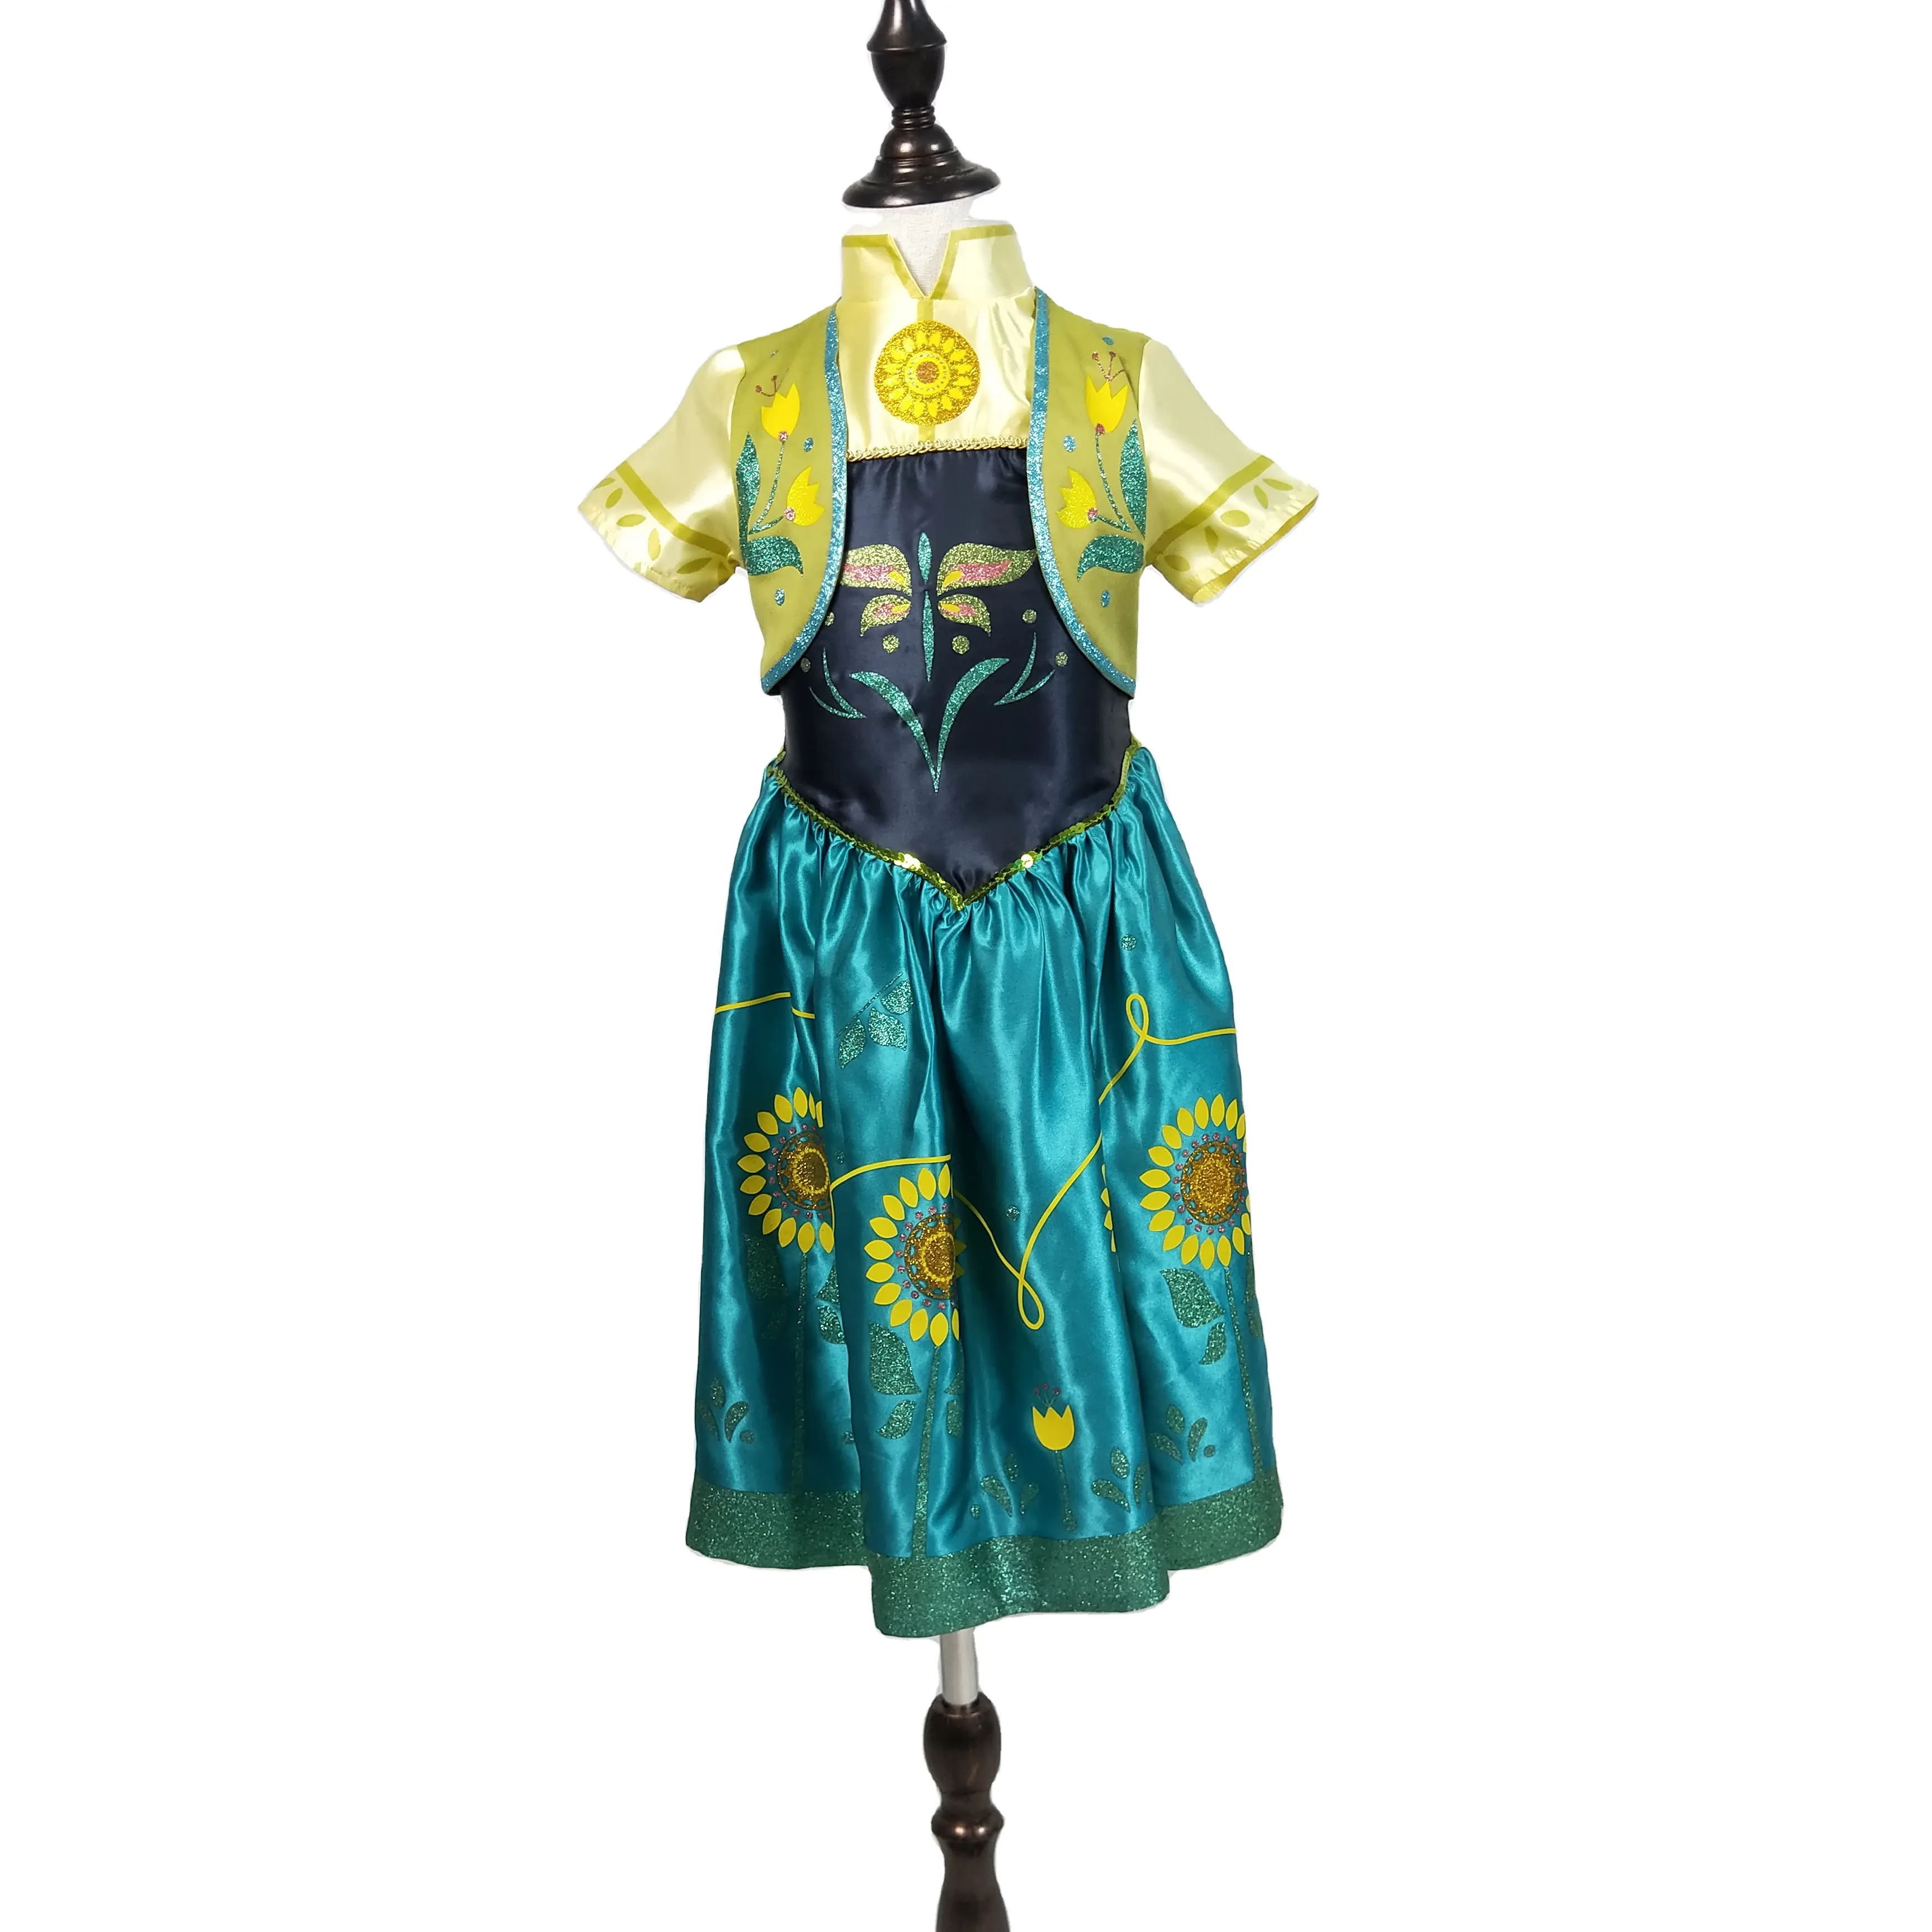 새로운 디자인 할로윈 공주 드레스 어린이 의상 5 10 년